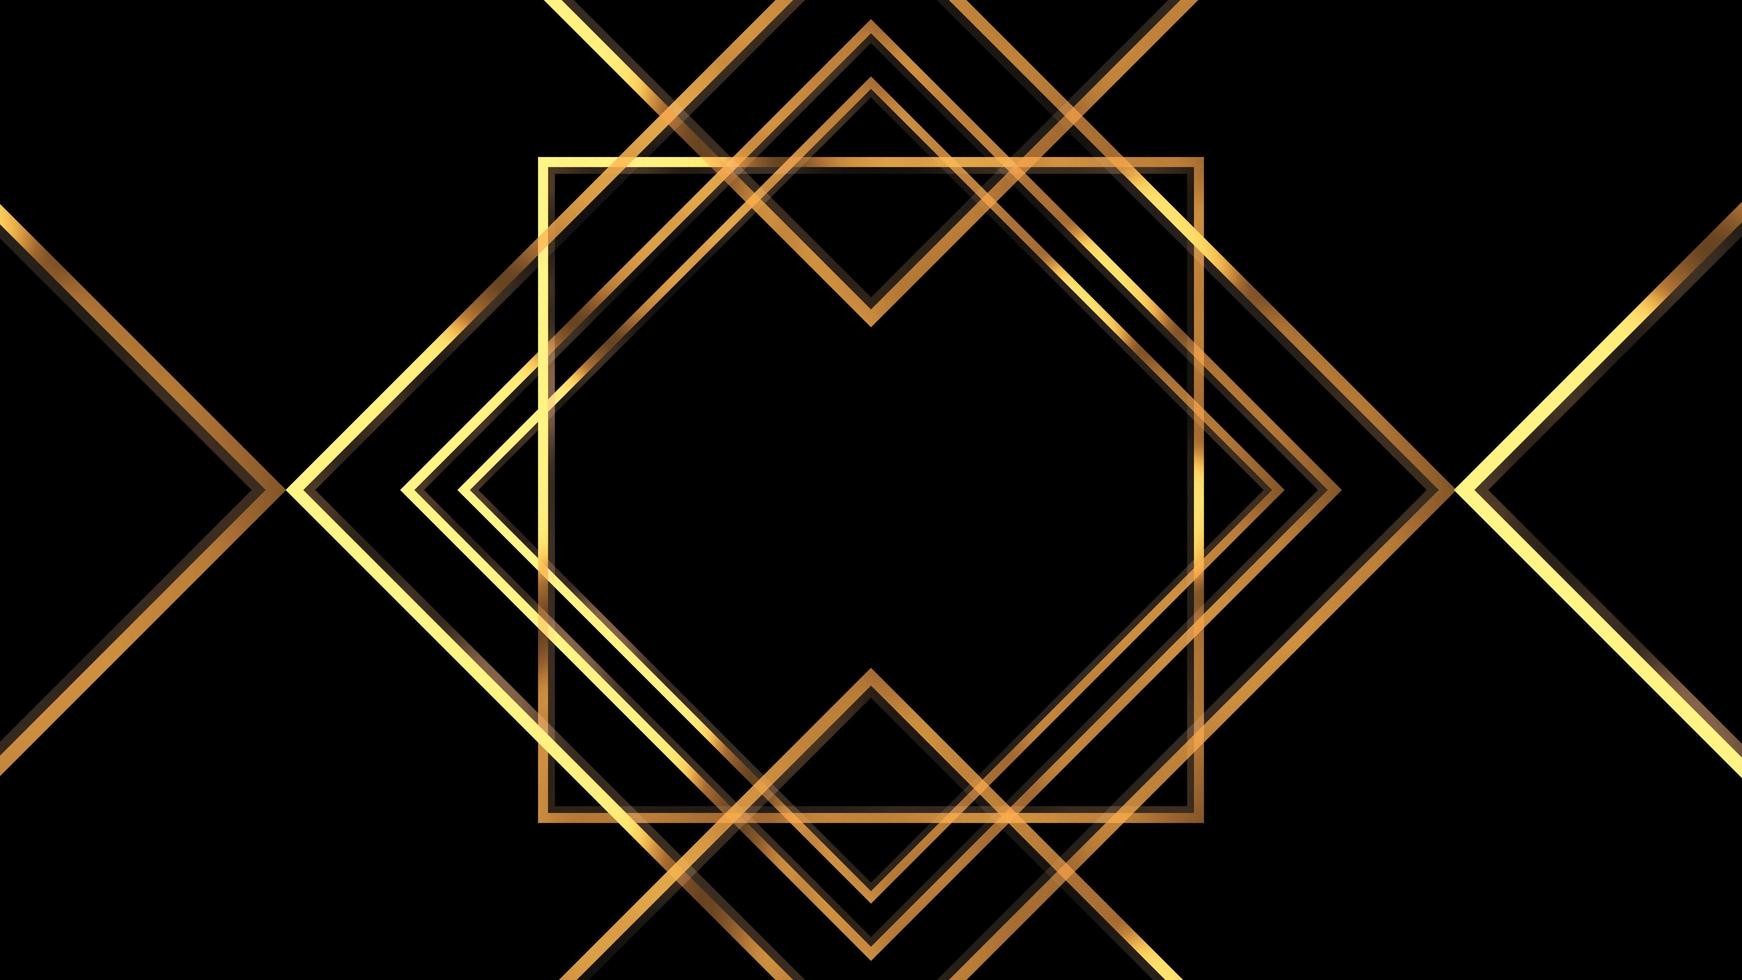 Estilo retro de los años 20. estilo art deco abstracto patrón de oro geométrico lineal 1920 fondo vintage. foto